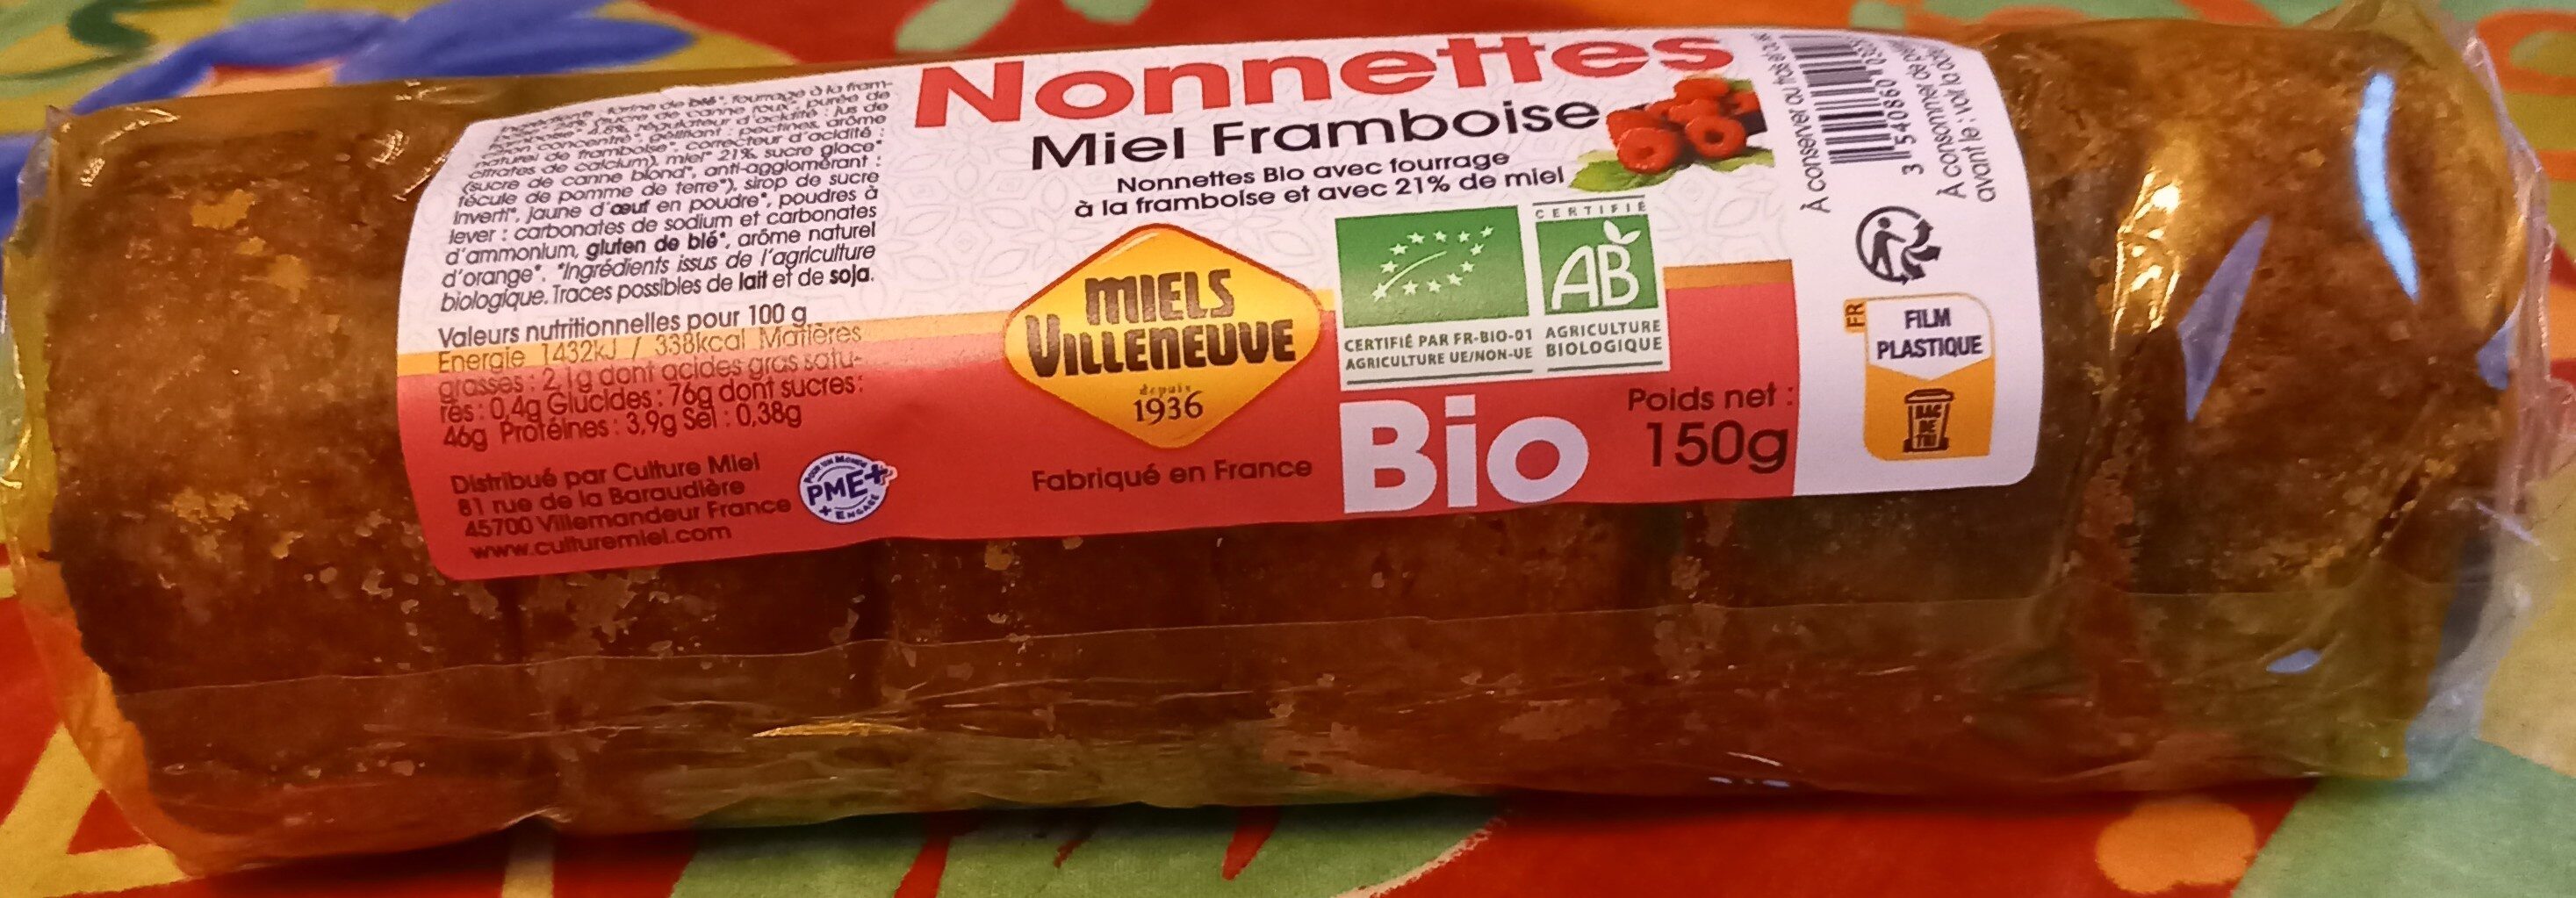 Nonnettes Au Miel🍯Et Fourrées Framboise Bio - Produkt - fr